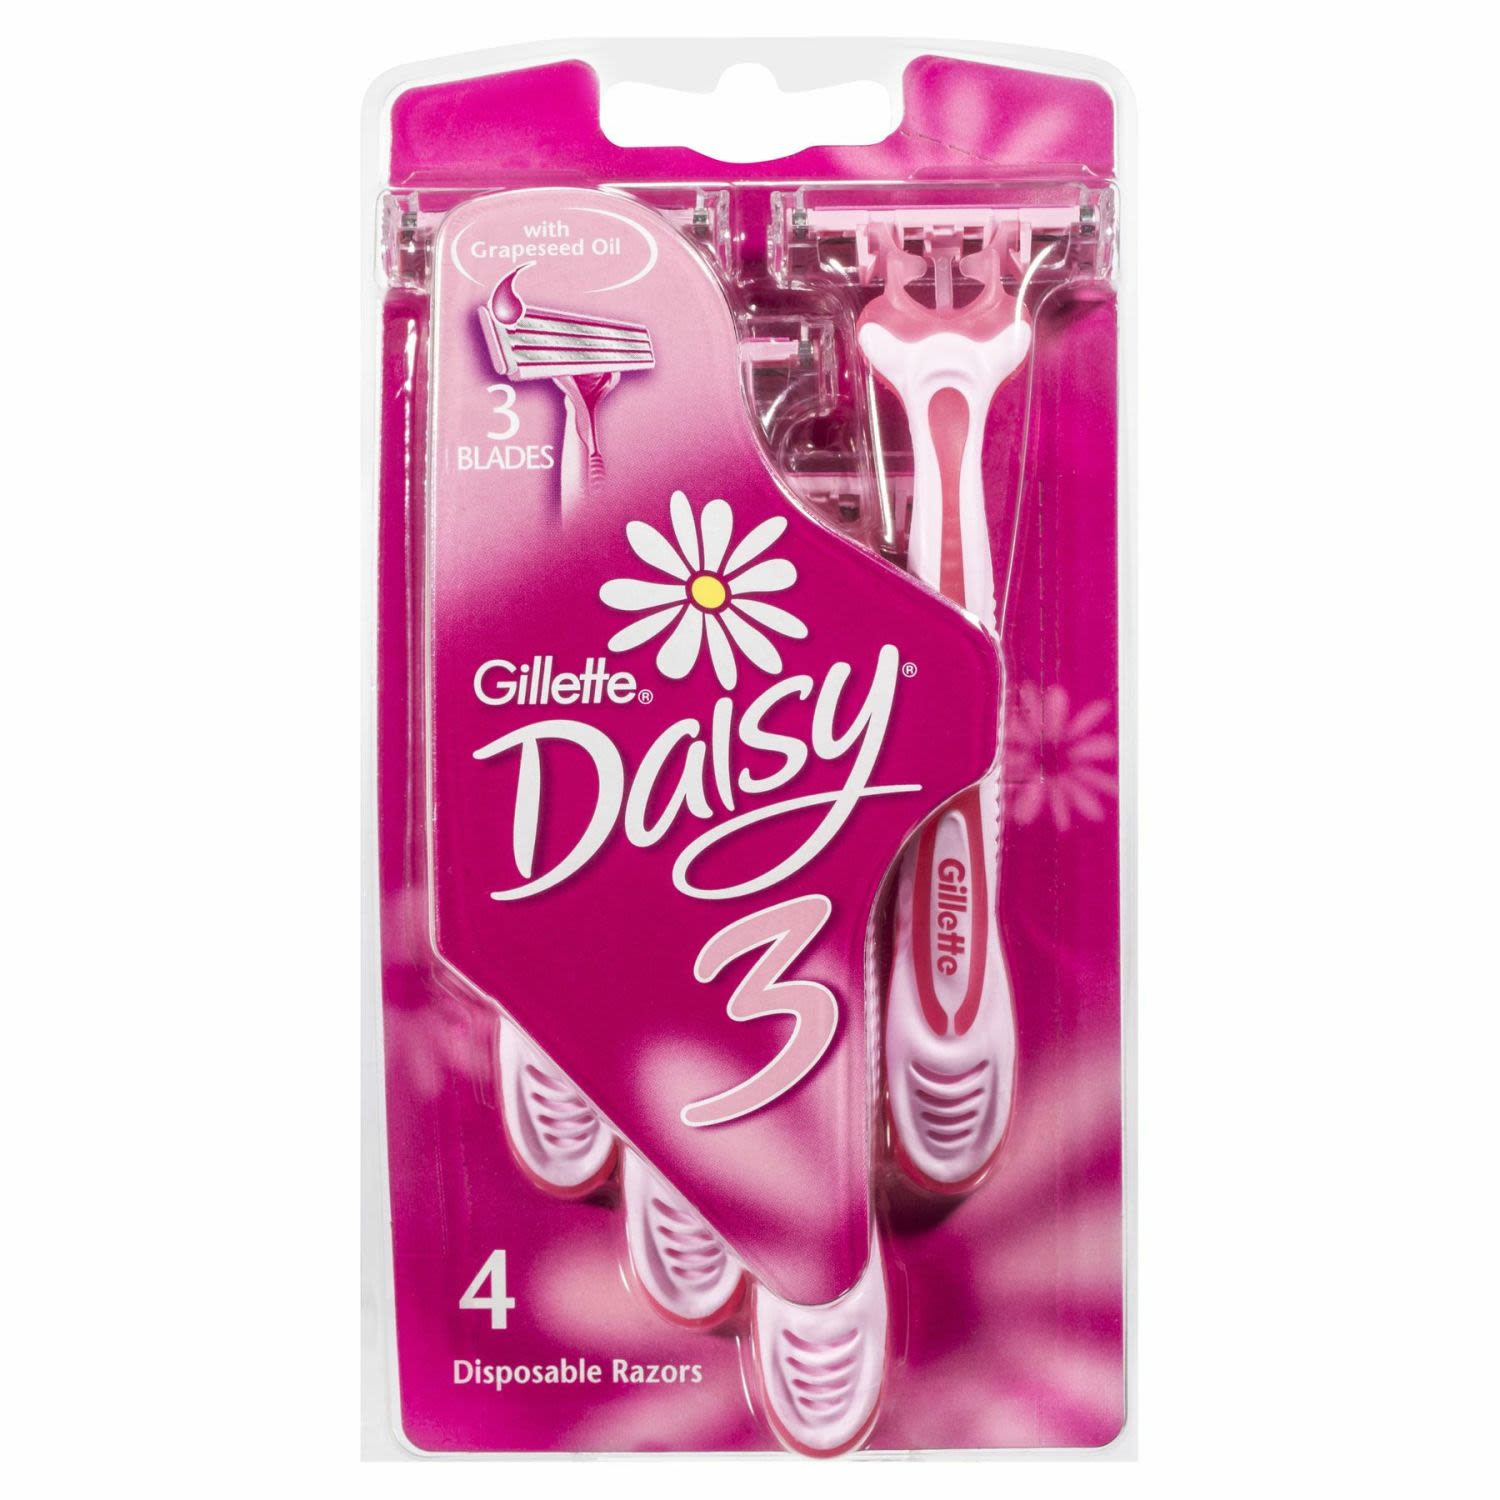 Gillette Venus Daisy 3 Disposable Razors, 4 Each